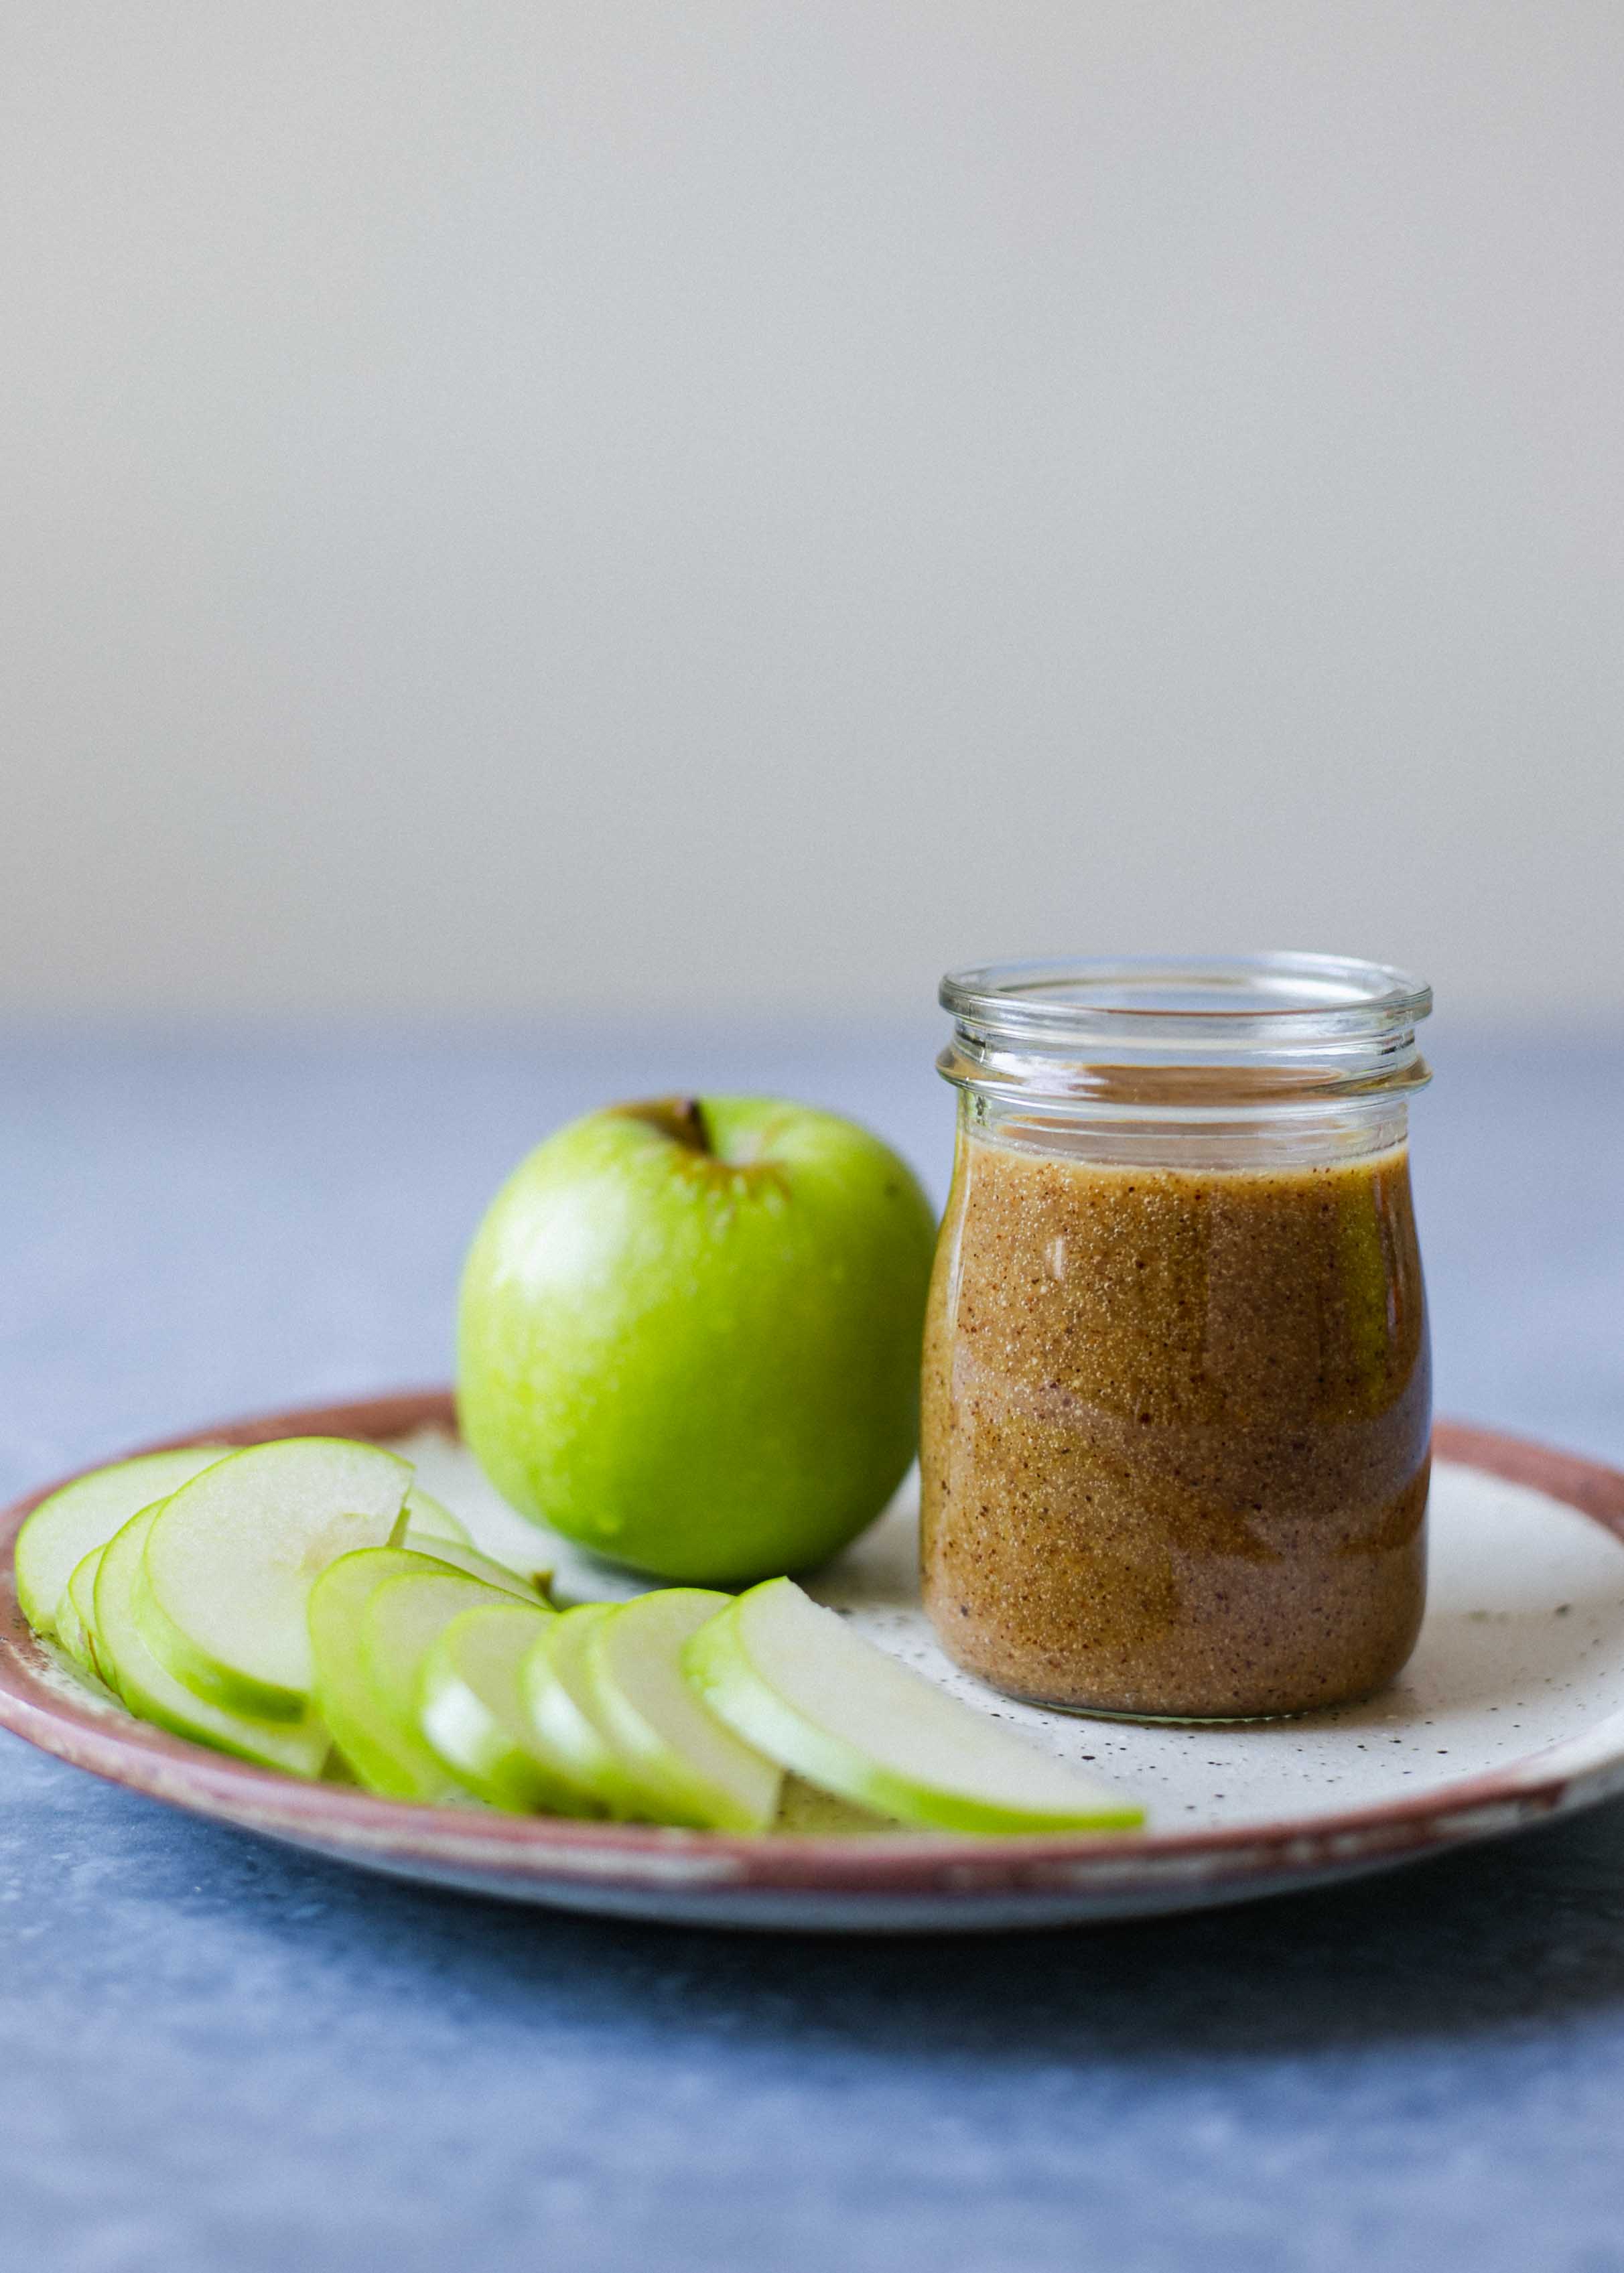 Almond butter caramel apples next to a jam jar